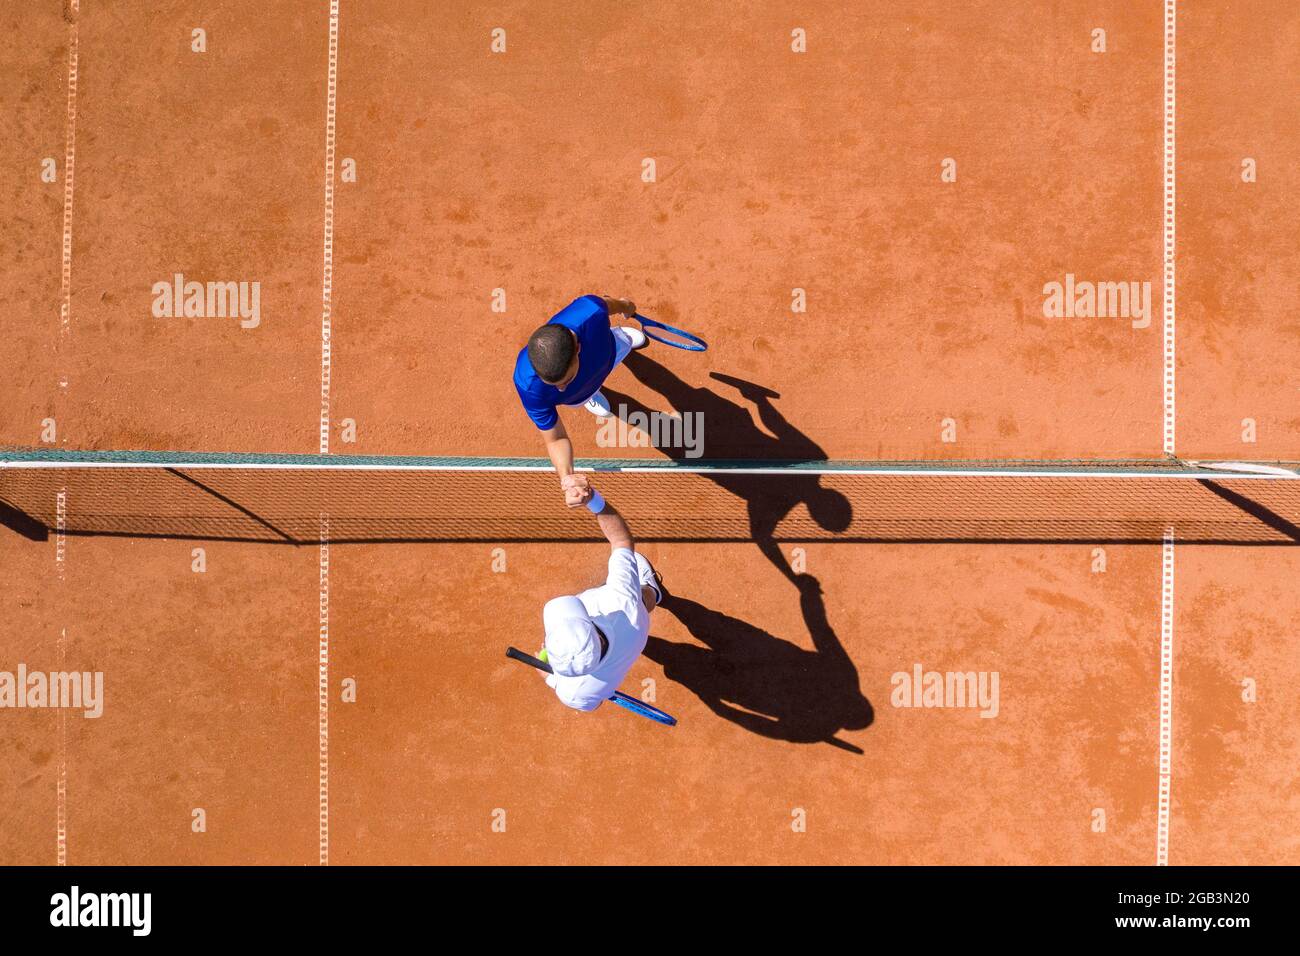 Vista aerea di due giocatori di tennis che si salutano l'un l'altro la rete dopo la fine del gioco Foto Stock